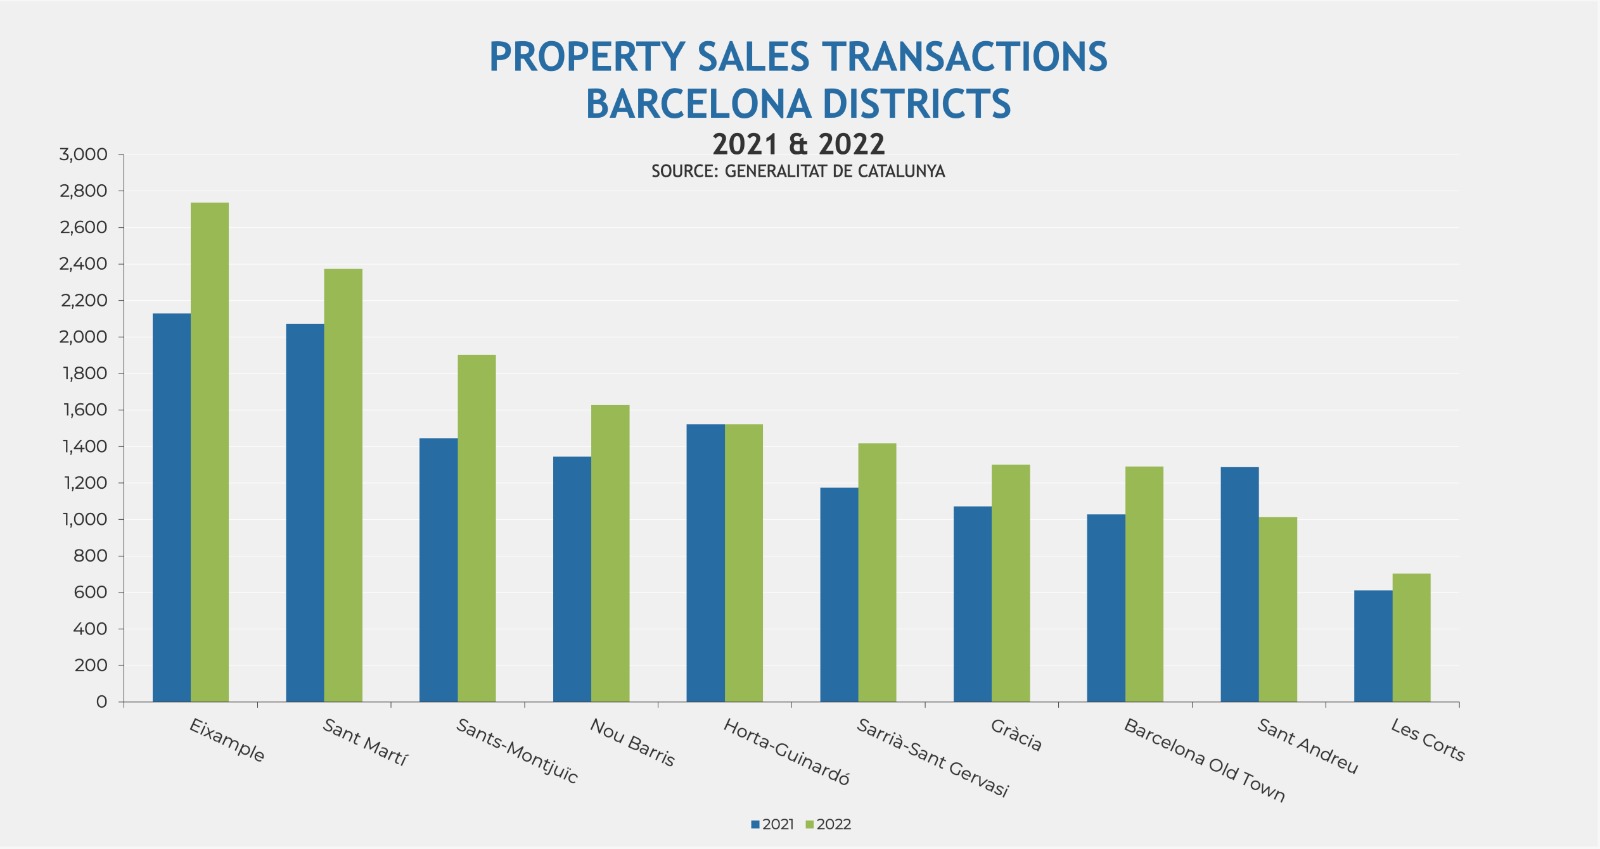 Sales transactions in Barcelona city: 2021 vs 2022